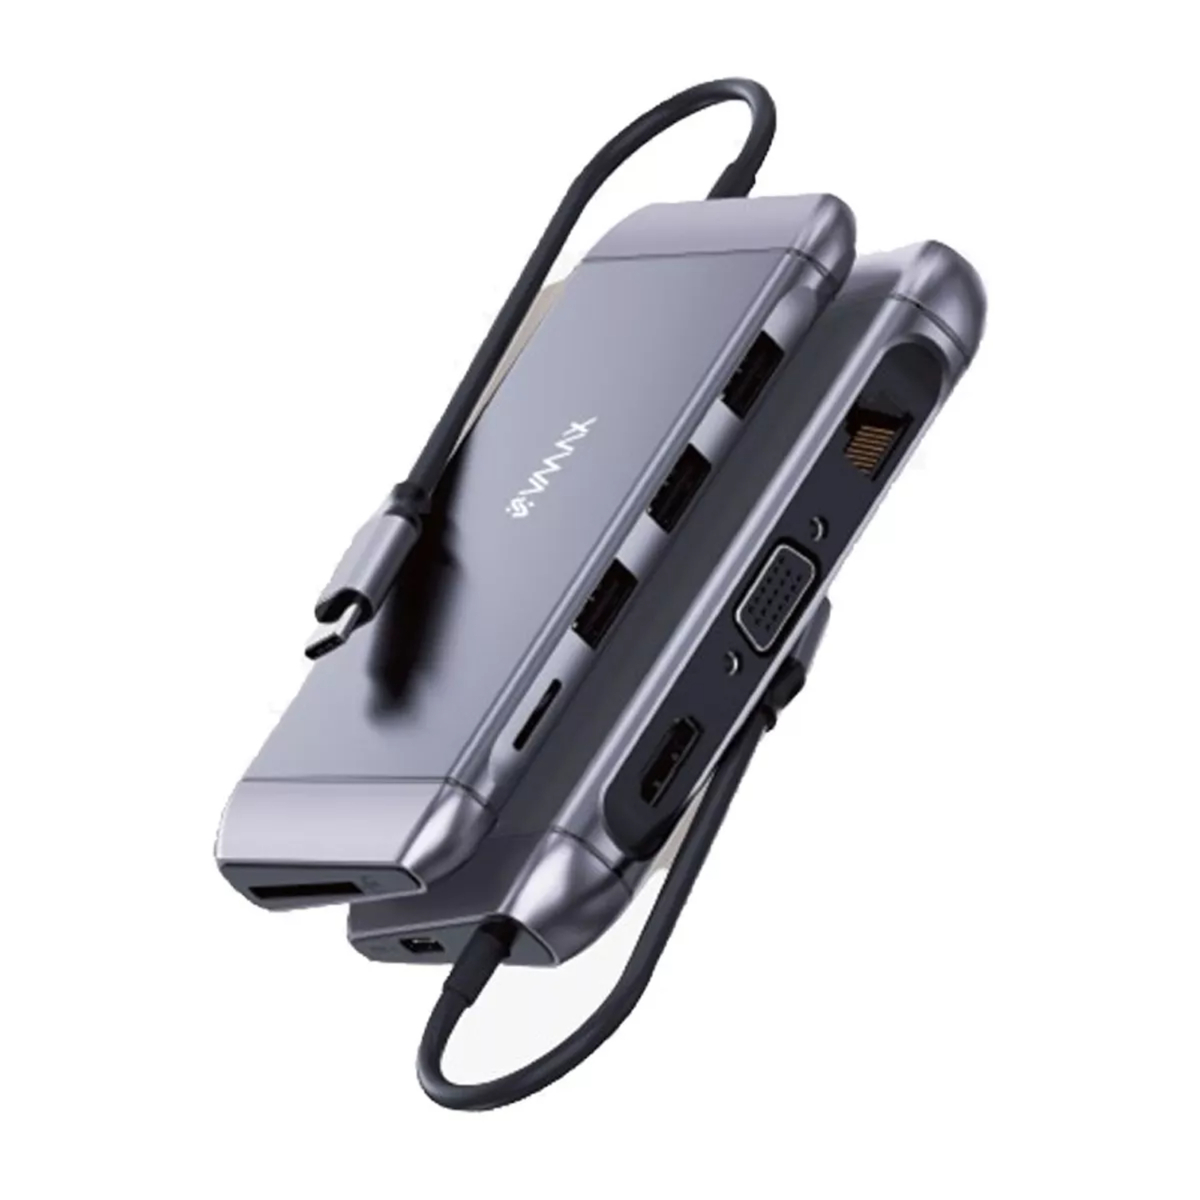 V-Max USB-C 9 in 1 Hub, Silver, VAH900